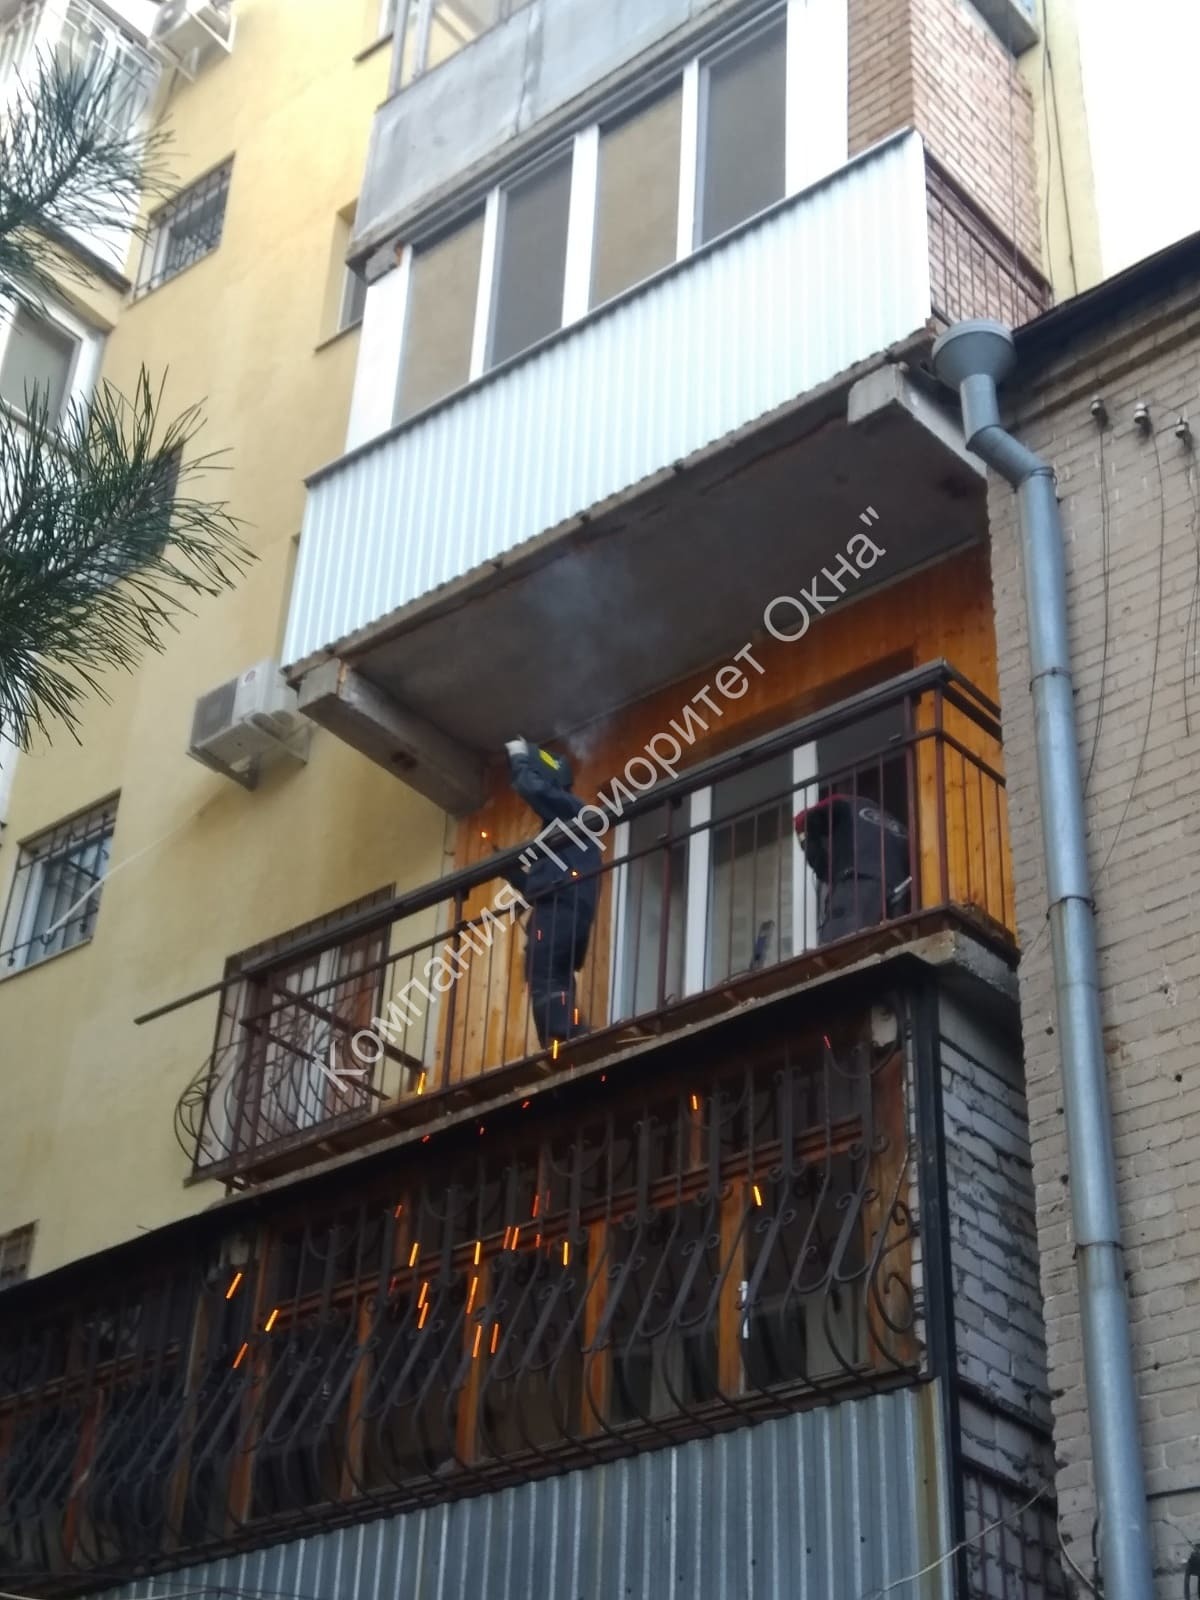 Пример остекления балкона с утеплением, по адресу: г. Самара, ул. Льва толстого 91 (1)